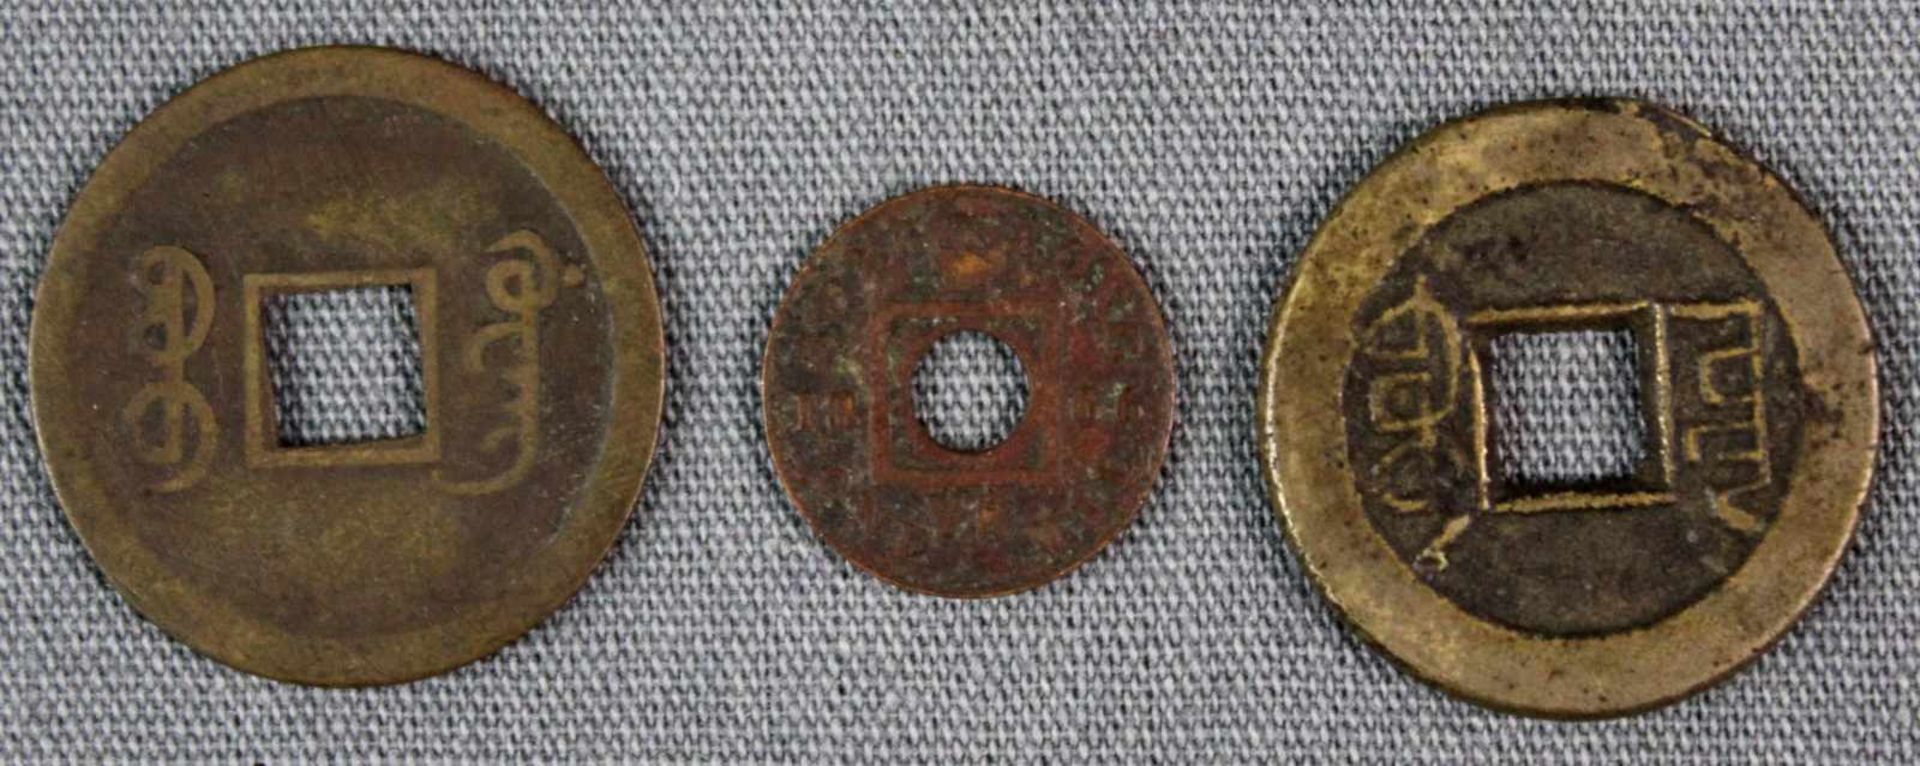 3 Münzen. Wohl Qing, China. Auch 1866 - Hong Kong - One Mil. Aus einer alten deutschen Sammlung. 3 - Bild 2 aus 3